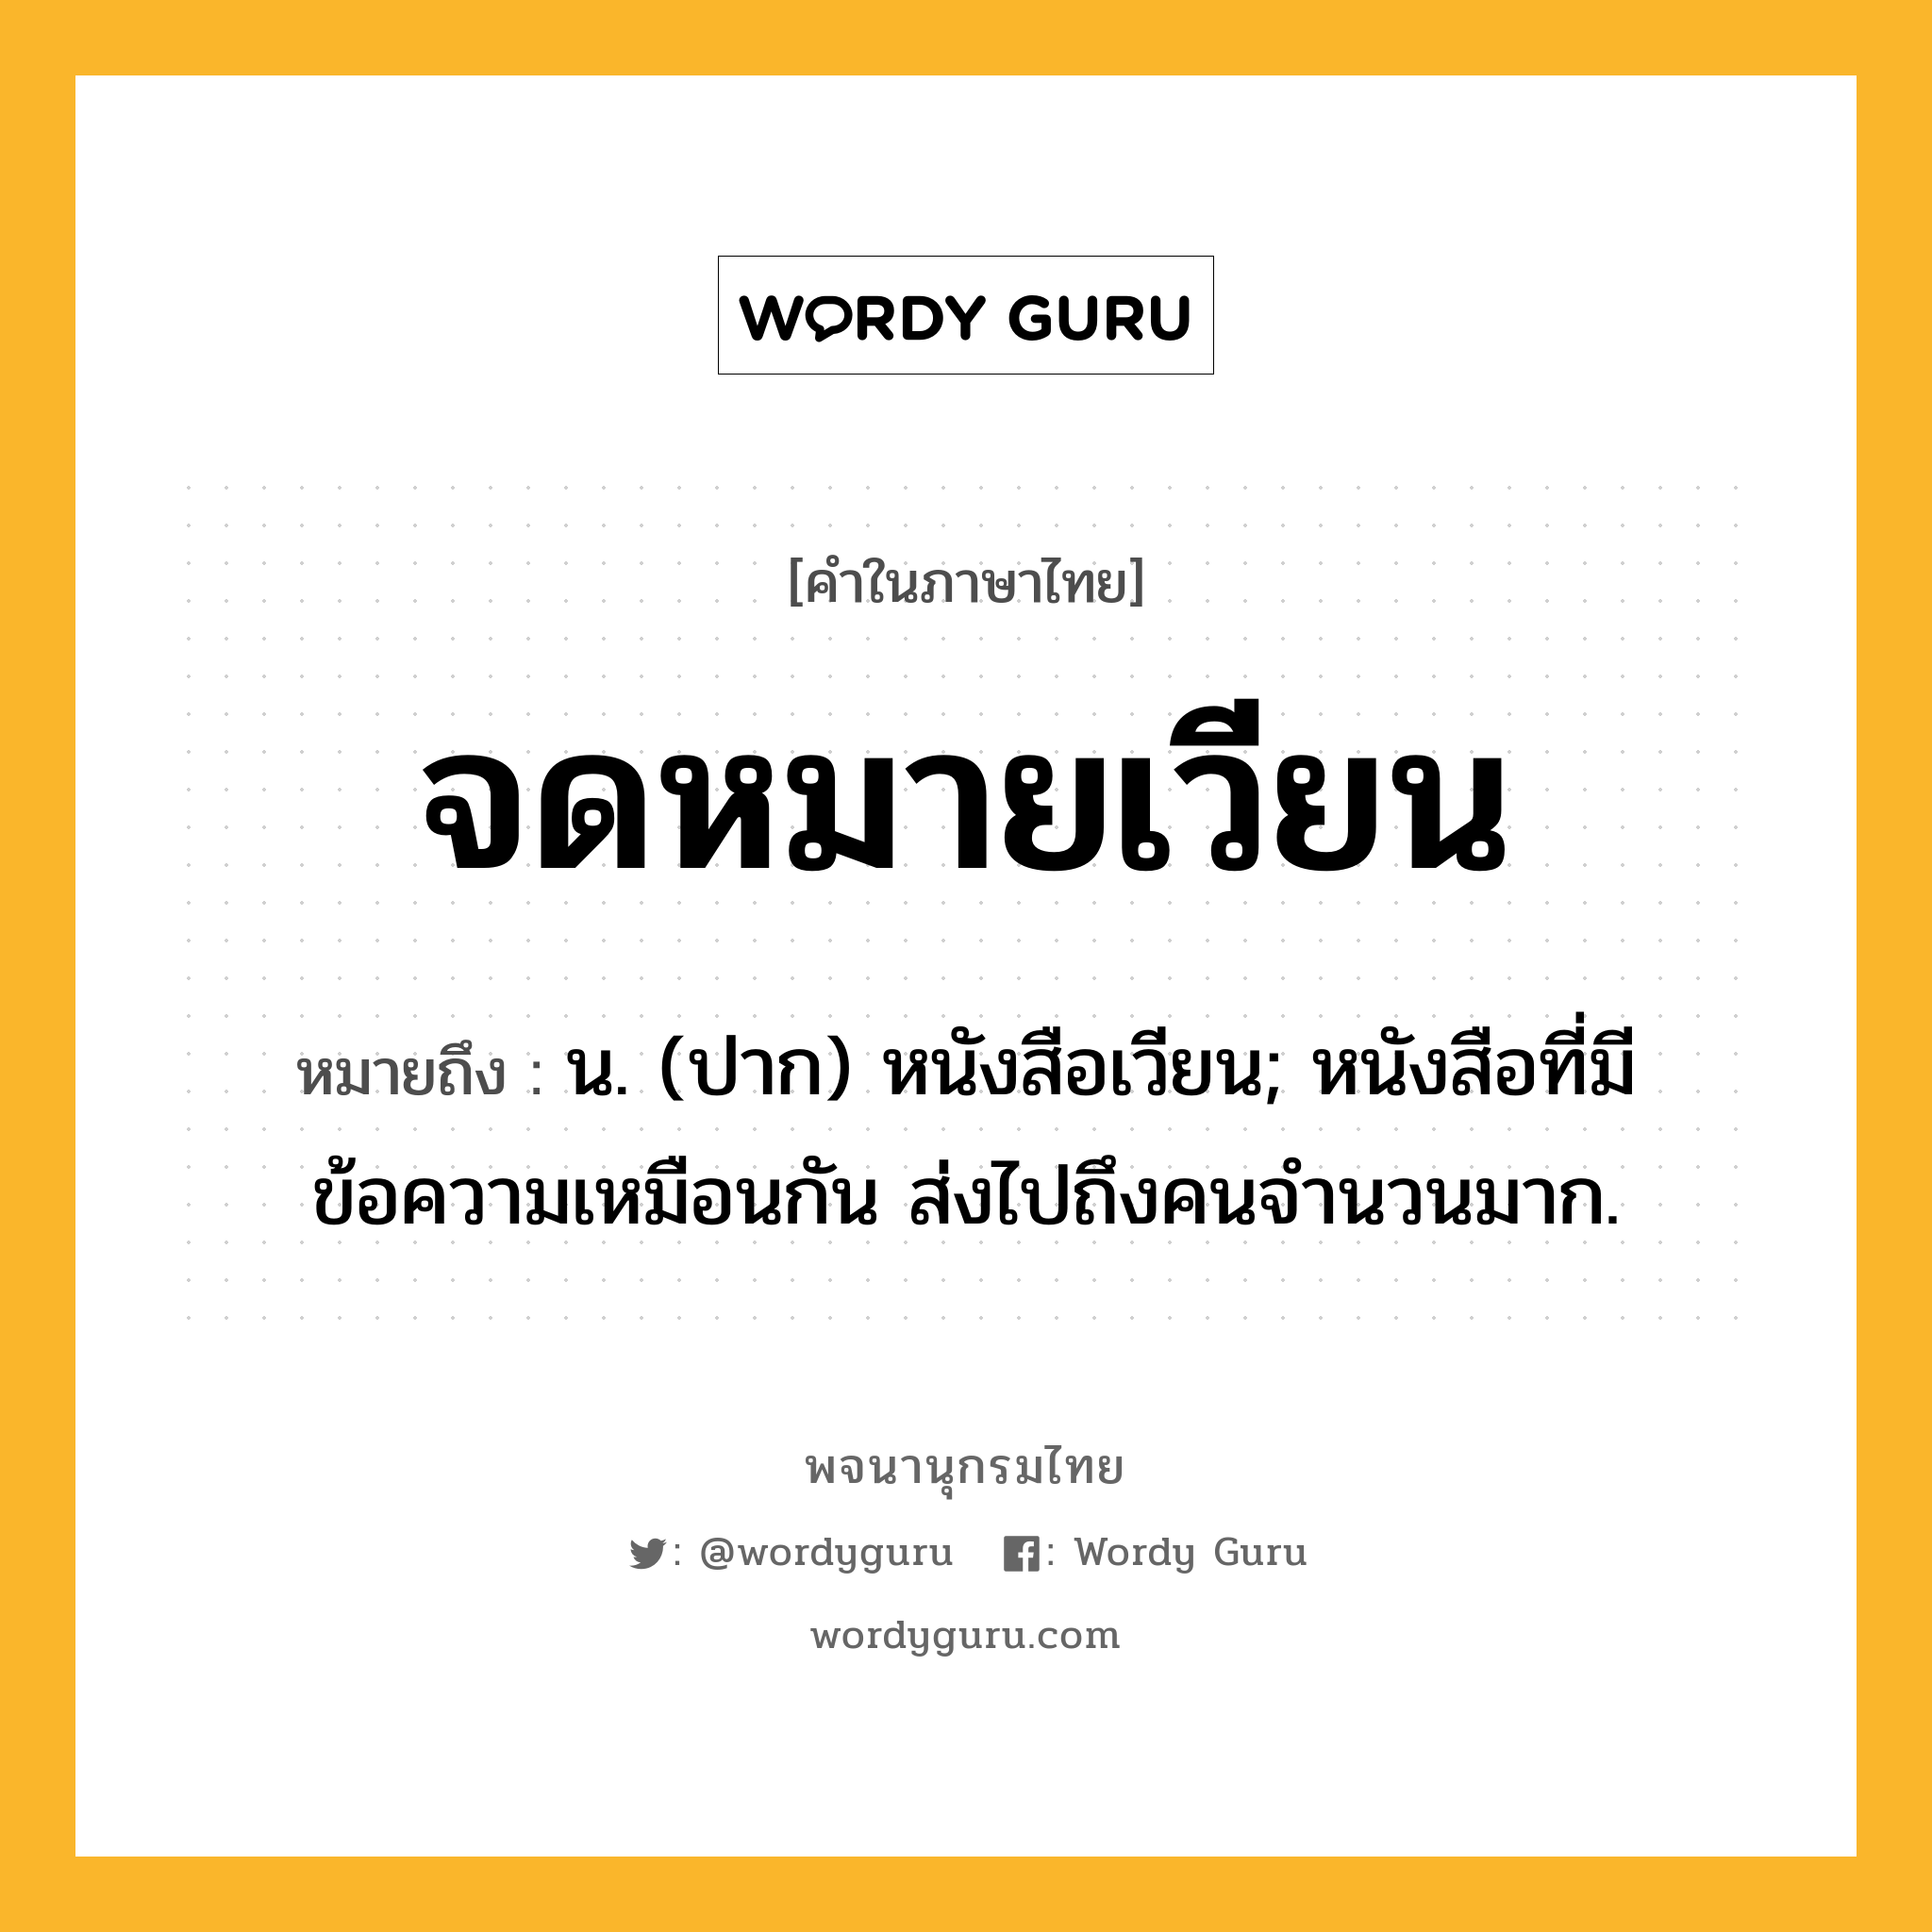 จดหมายเวียน ความหมาย หมายถึงอะไร?, คำในภาษาไทย จดหมายเวียน หมายถึง น. (ปาก) หนังสือเวียน; หนังสือที่มีข้อความเหมือนกัน ส่งไปถึงคนจํานวนมาก.